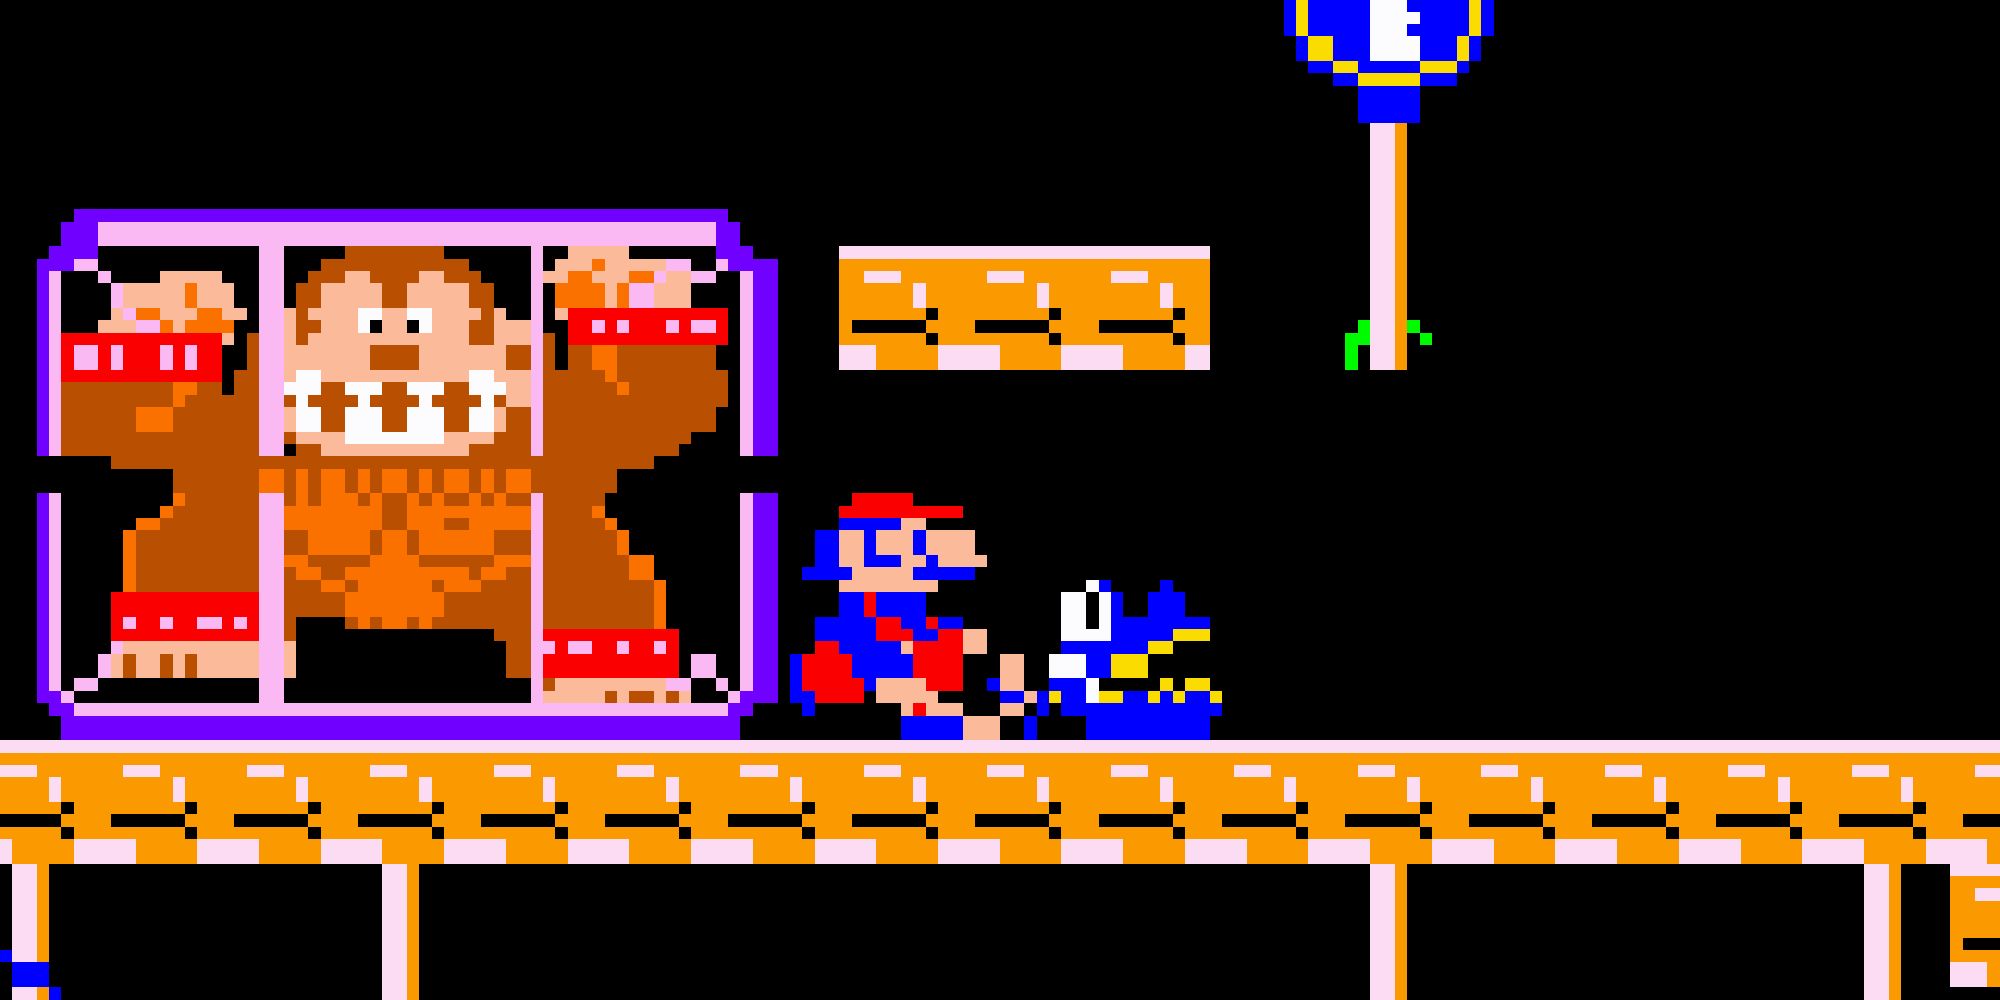 Mario guarding Donkey Kong's cage in Donkey Kong Jr.